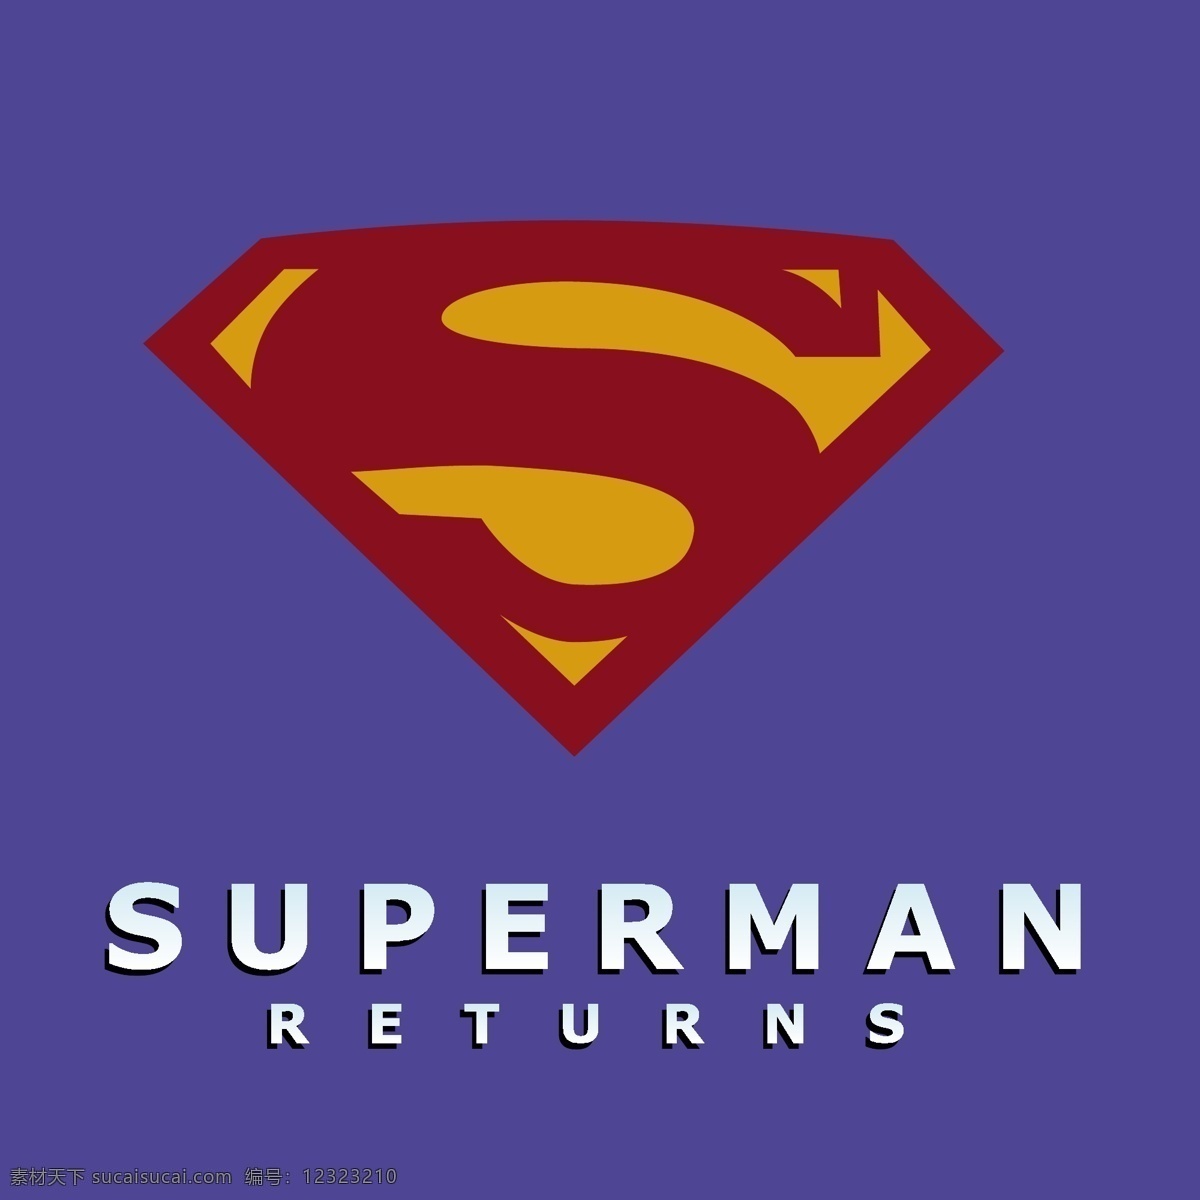 超人 归来 免费 标志 标识 psd源文件 logo设计